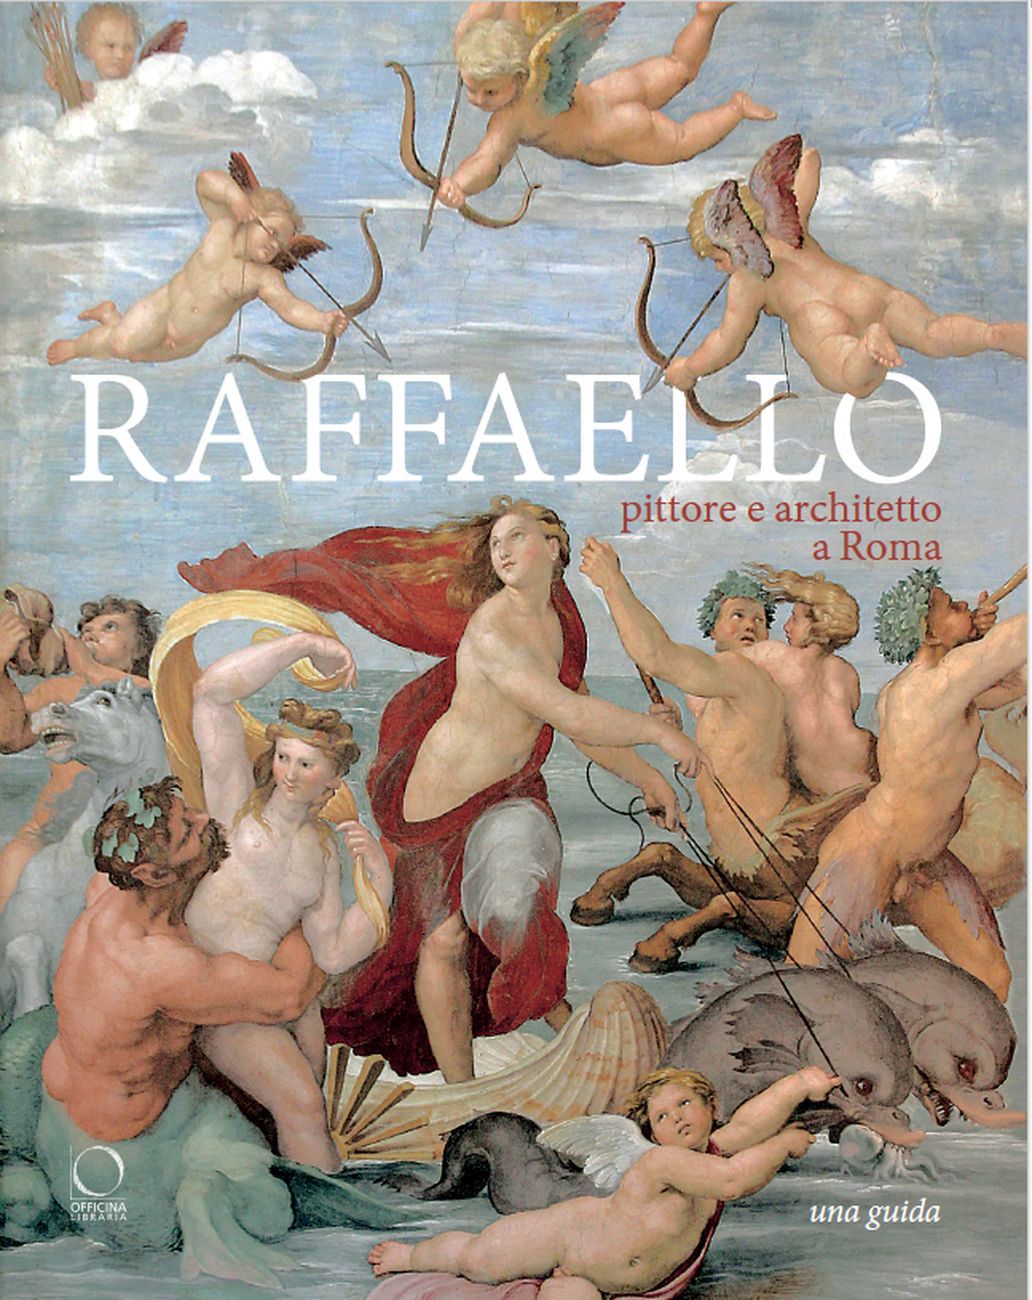 Francesco Benelli & Silvia Ginzburg – Raffaello pittore e architetto a Roma (Officina Libraria, Roma 2020)